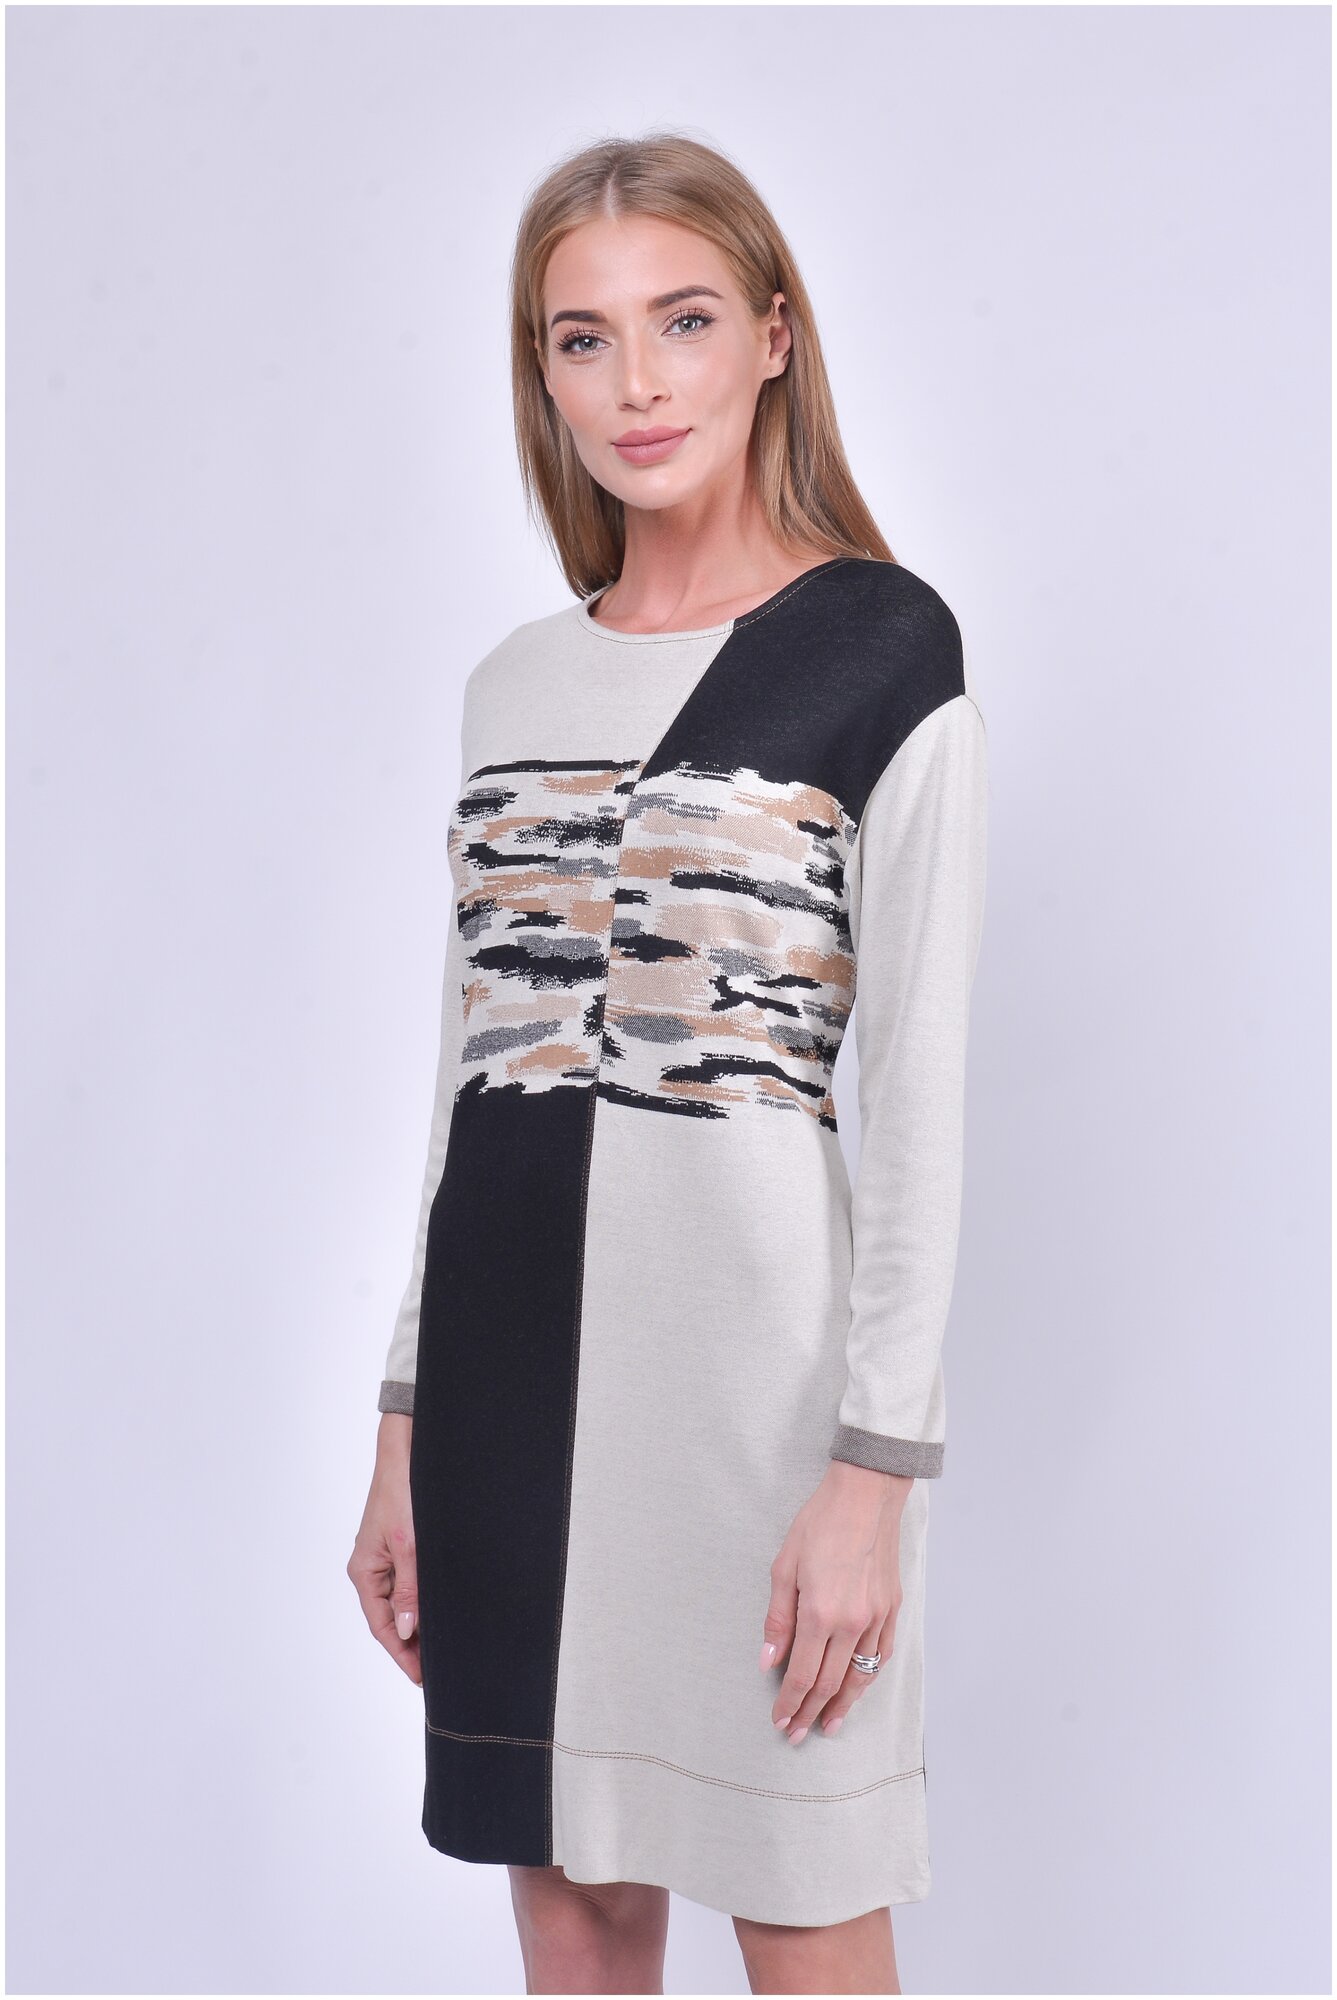 Женское платье Тамбовчанка р.60 — купить в интернет-магазине по низкой цене на Яндекс Маркете